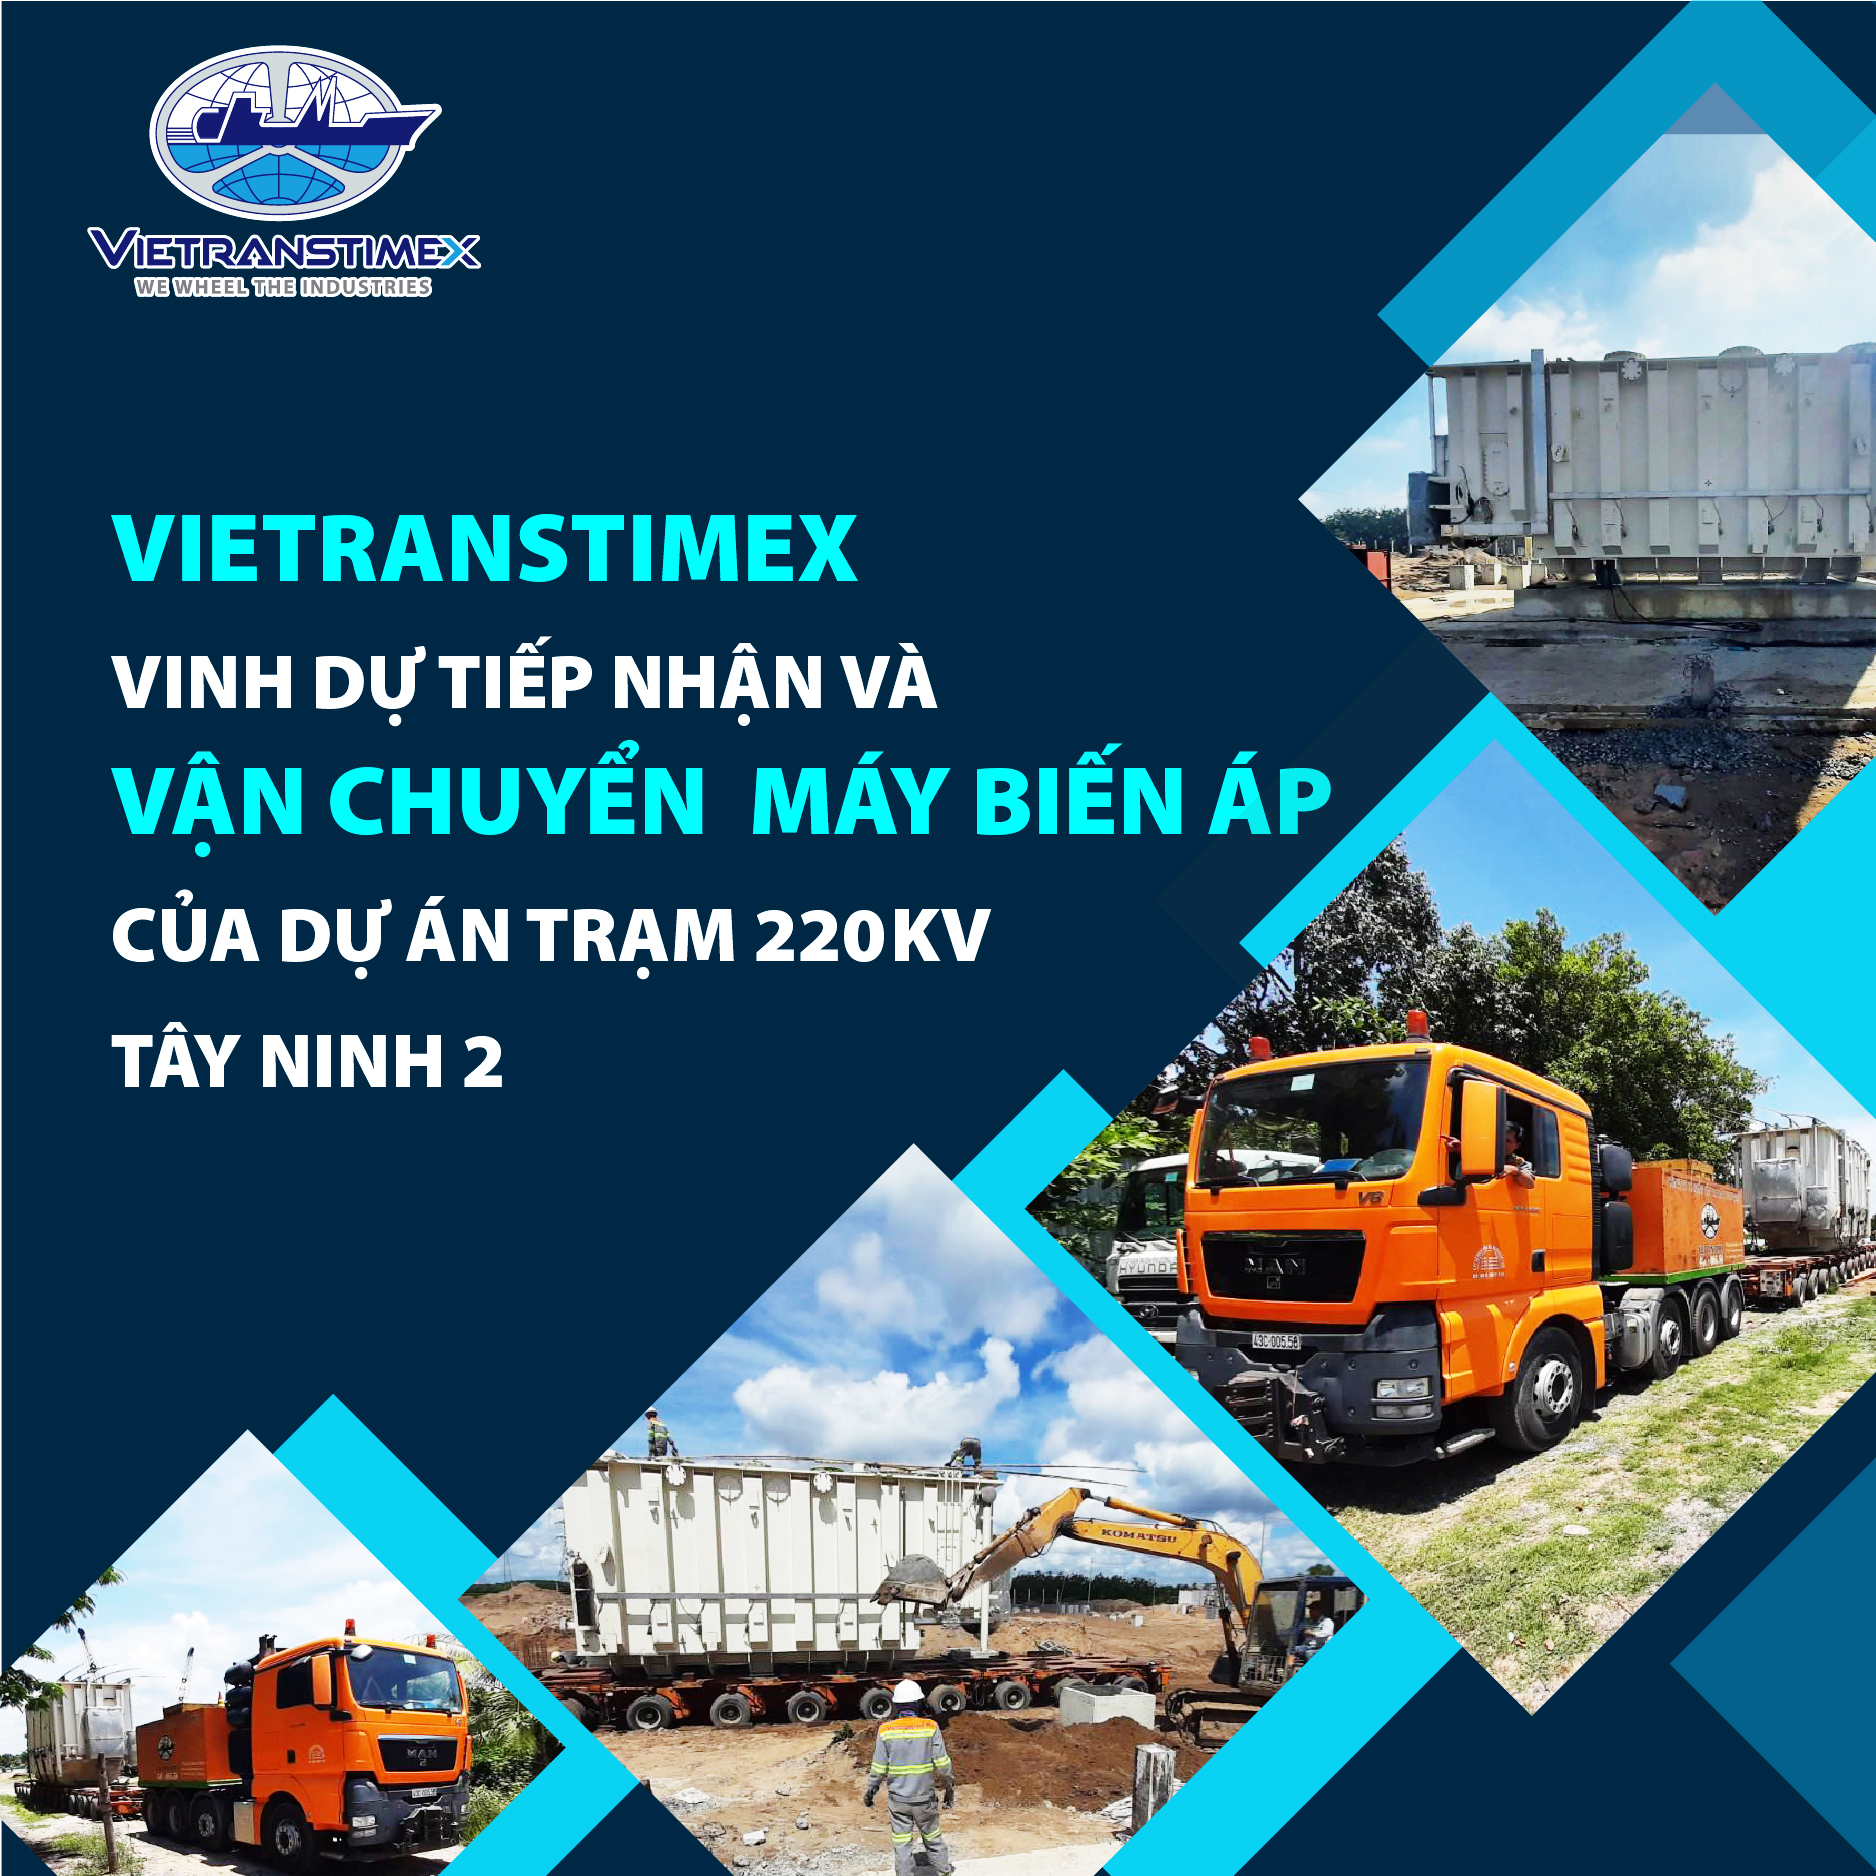 Vietranstimex vinh dự tiếp nhận và vận chuyển  máy biến áp của dự án trạm 220 kV Tây Ninh 2